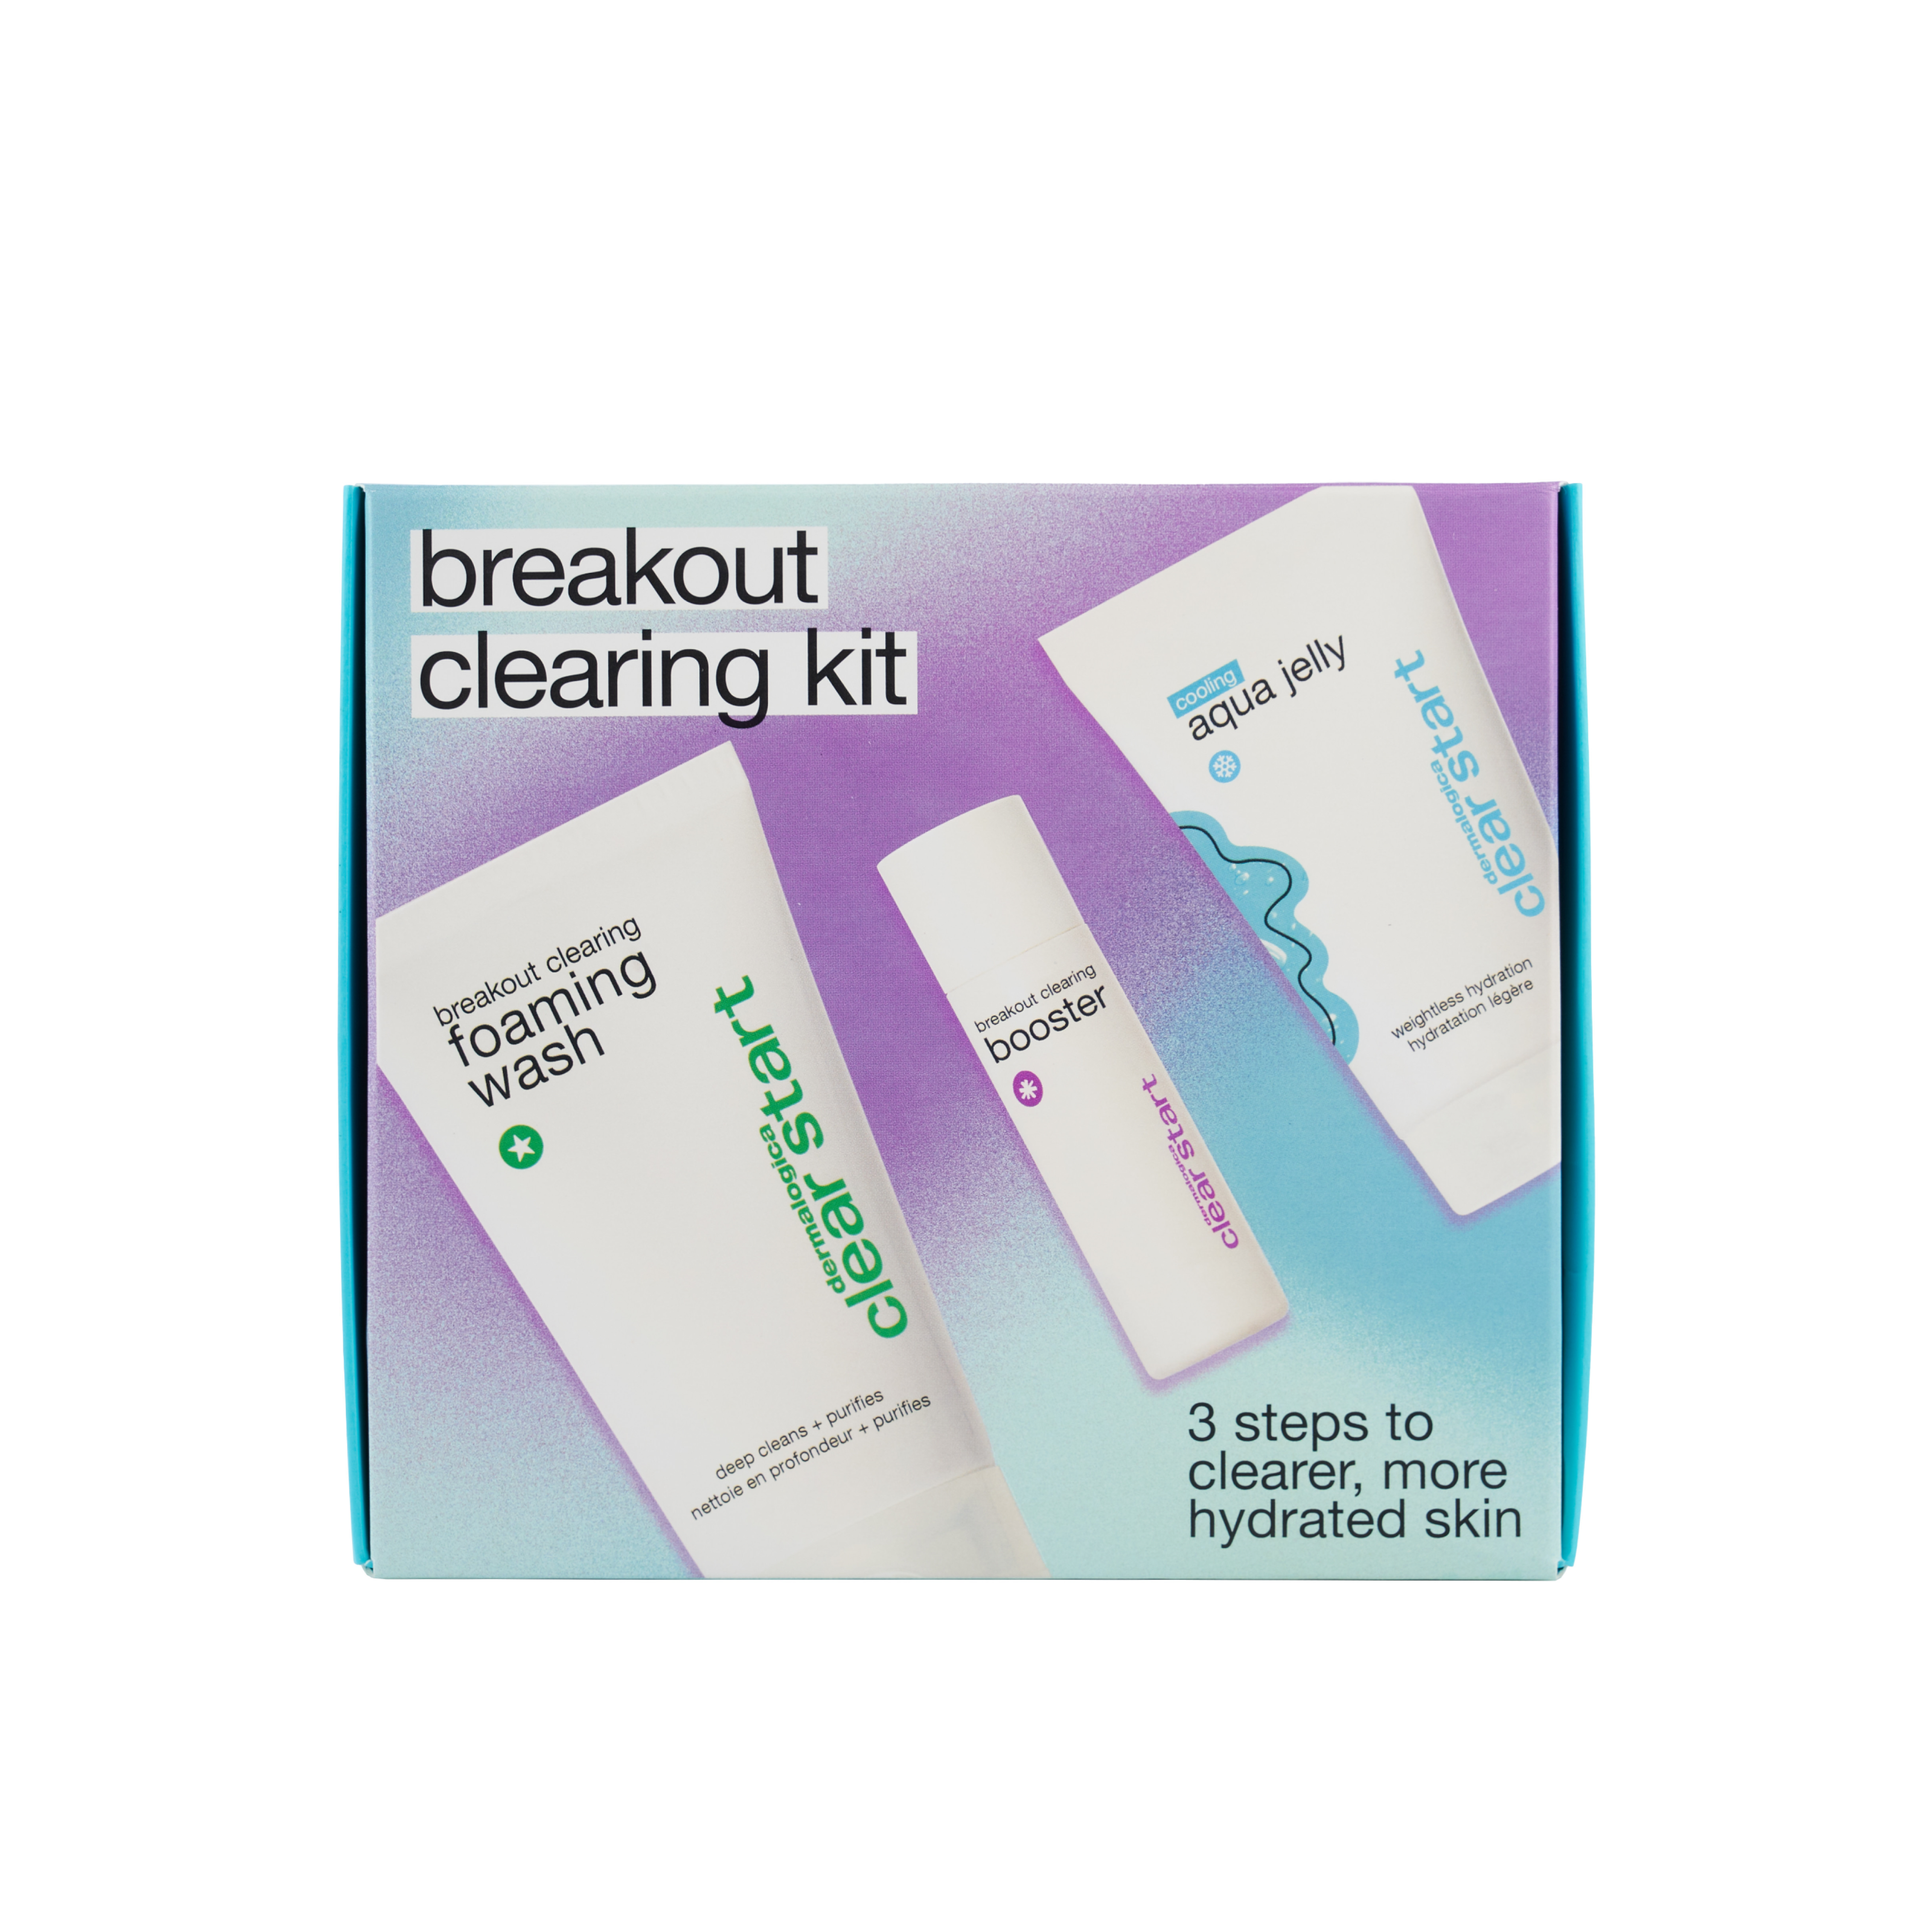 Dermalogica Clear Start Breakout Clearing Kit